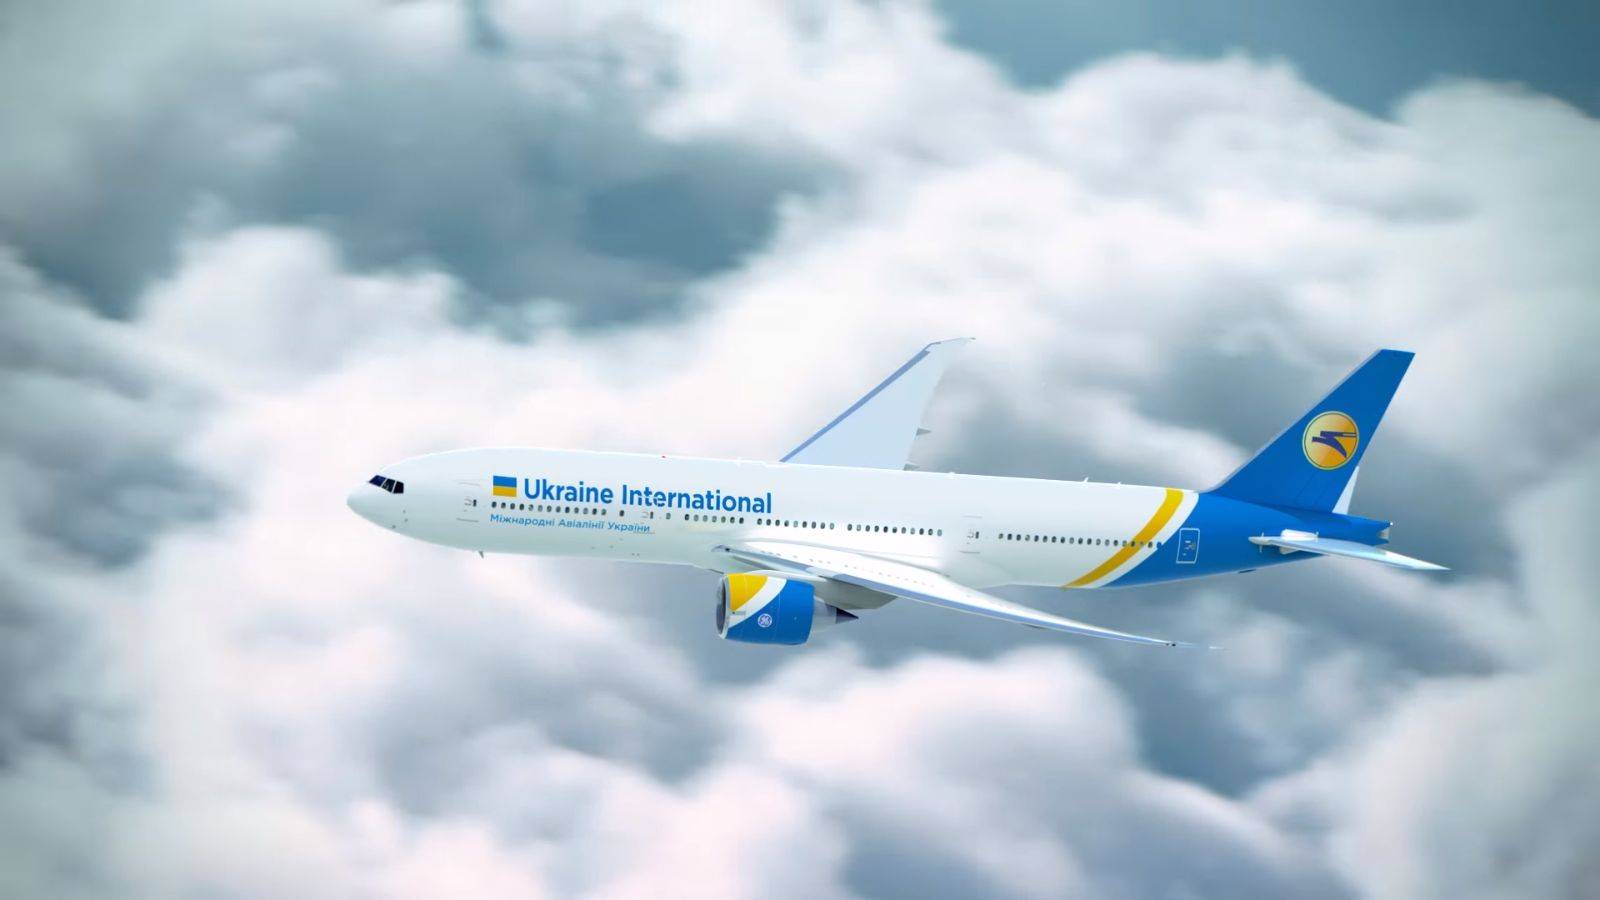 12 авиакомпаний, которые напрямую летают из украины на курорты и в европу - 1001 идея бюджетных путешествий европой